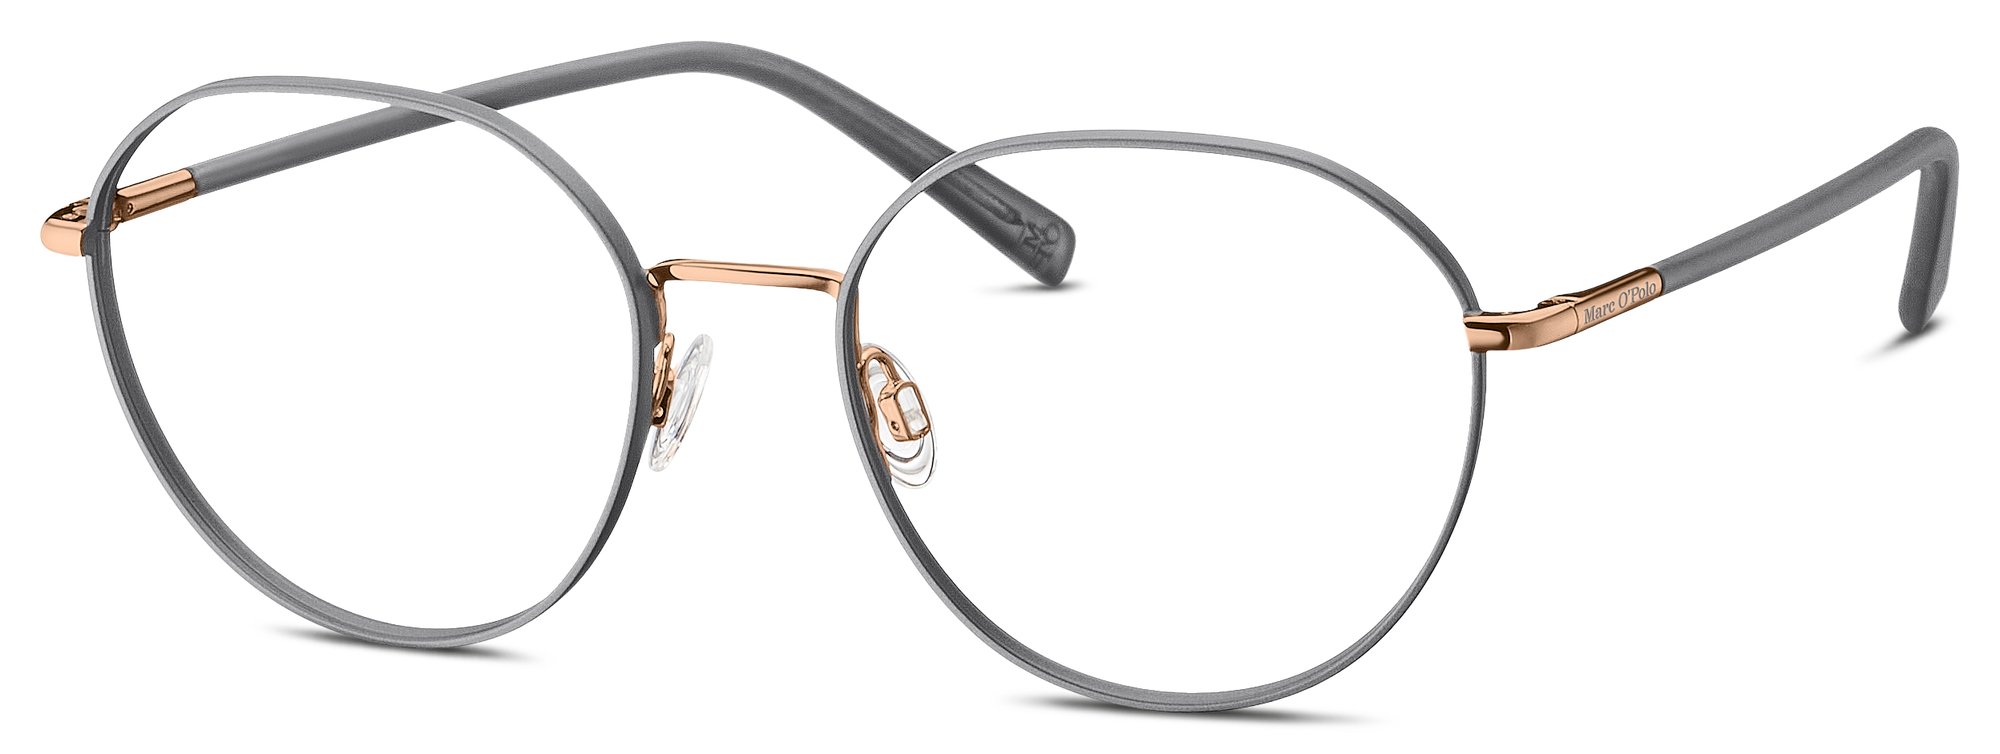 Das Bild zeigt die Korrektionsbrille 502171 20 von der Marke Marc O‘Polo in grau/gold.